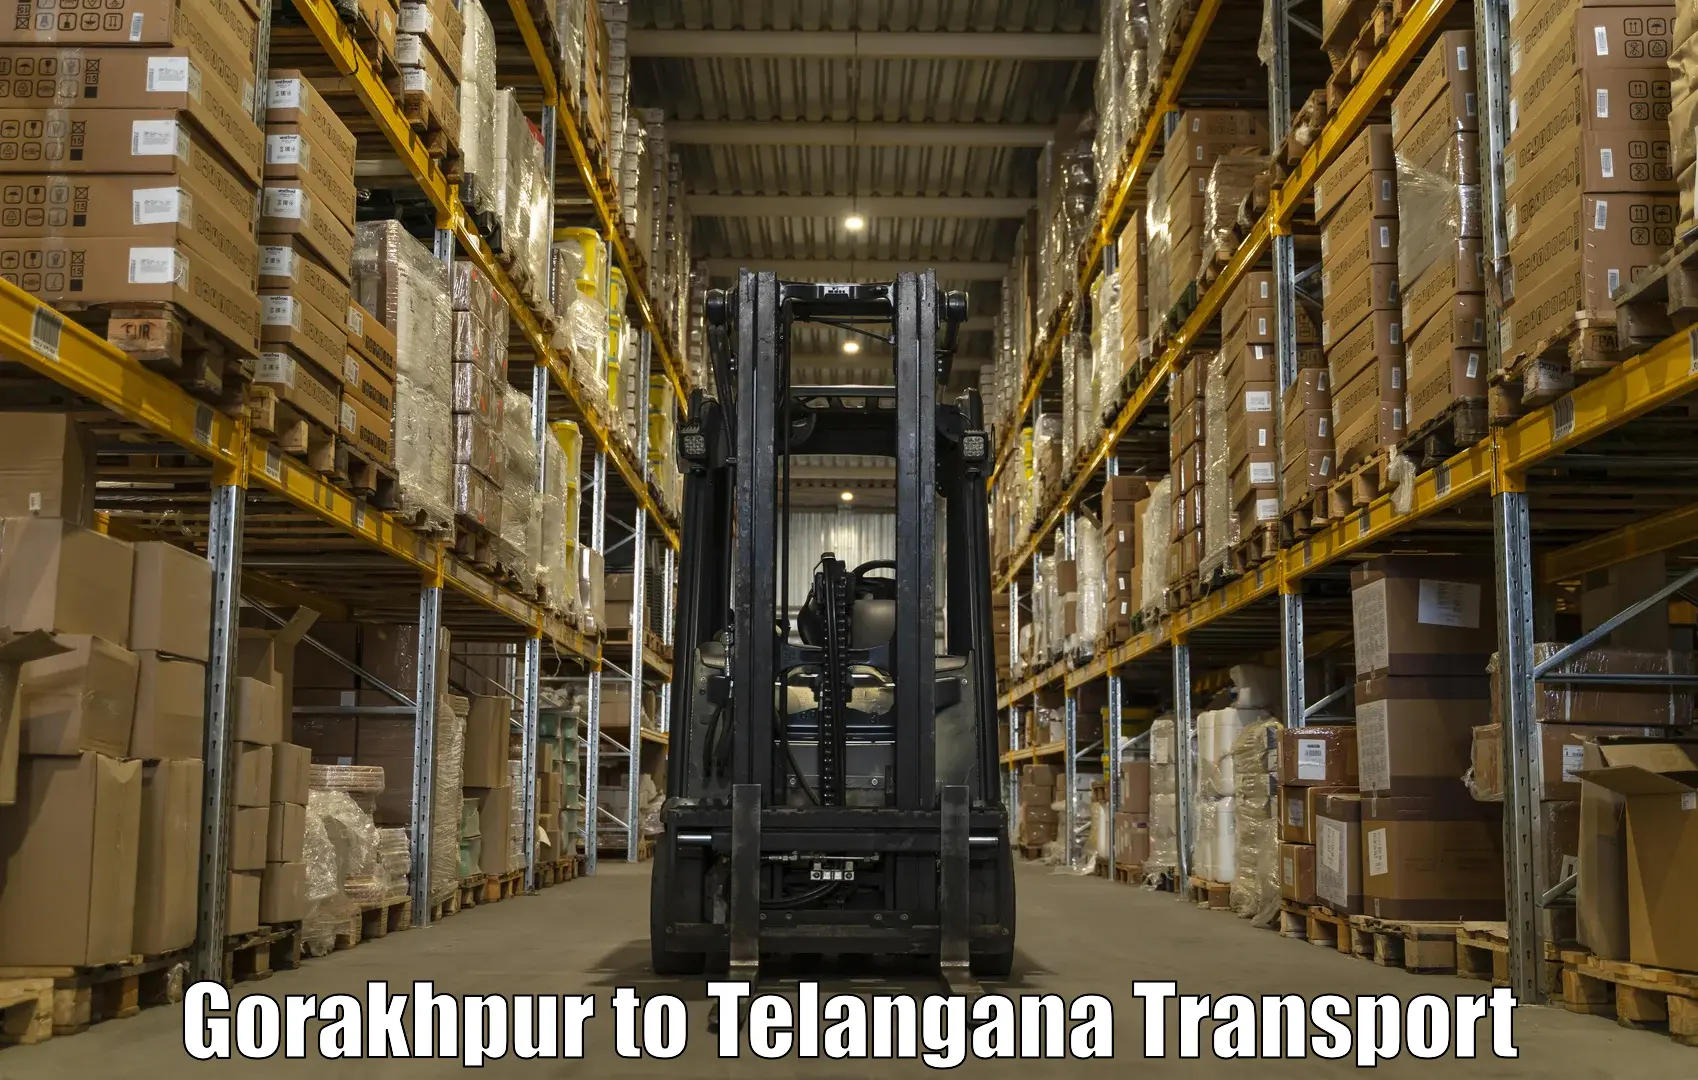 Shipping partner Gorakhpur to Kacheguda